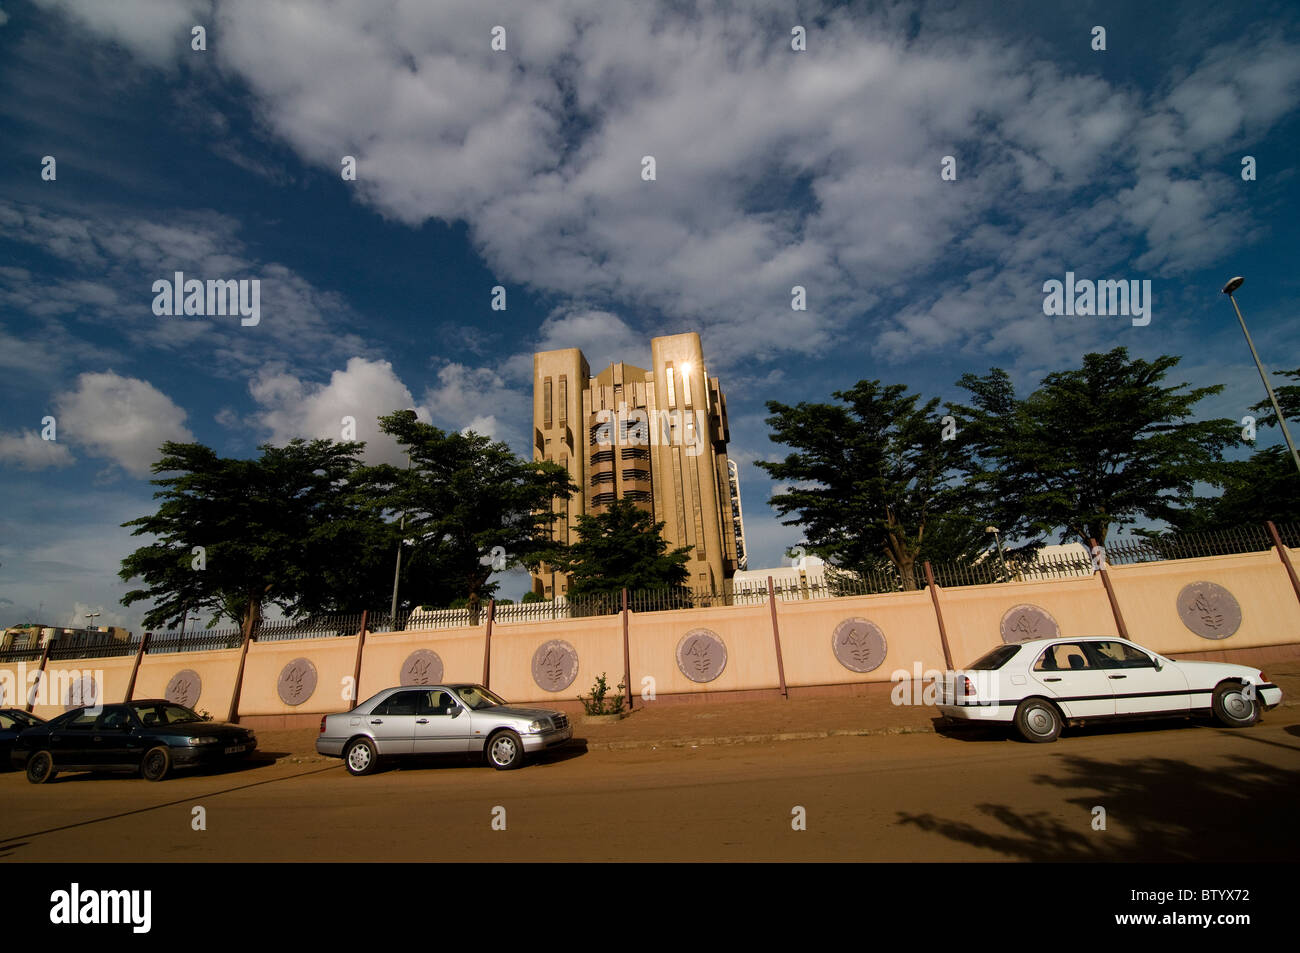 The Central bank of Burkina Faso in downtown Ouagadougou. Stock Photo